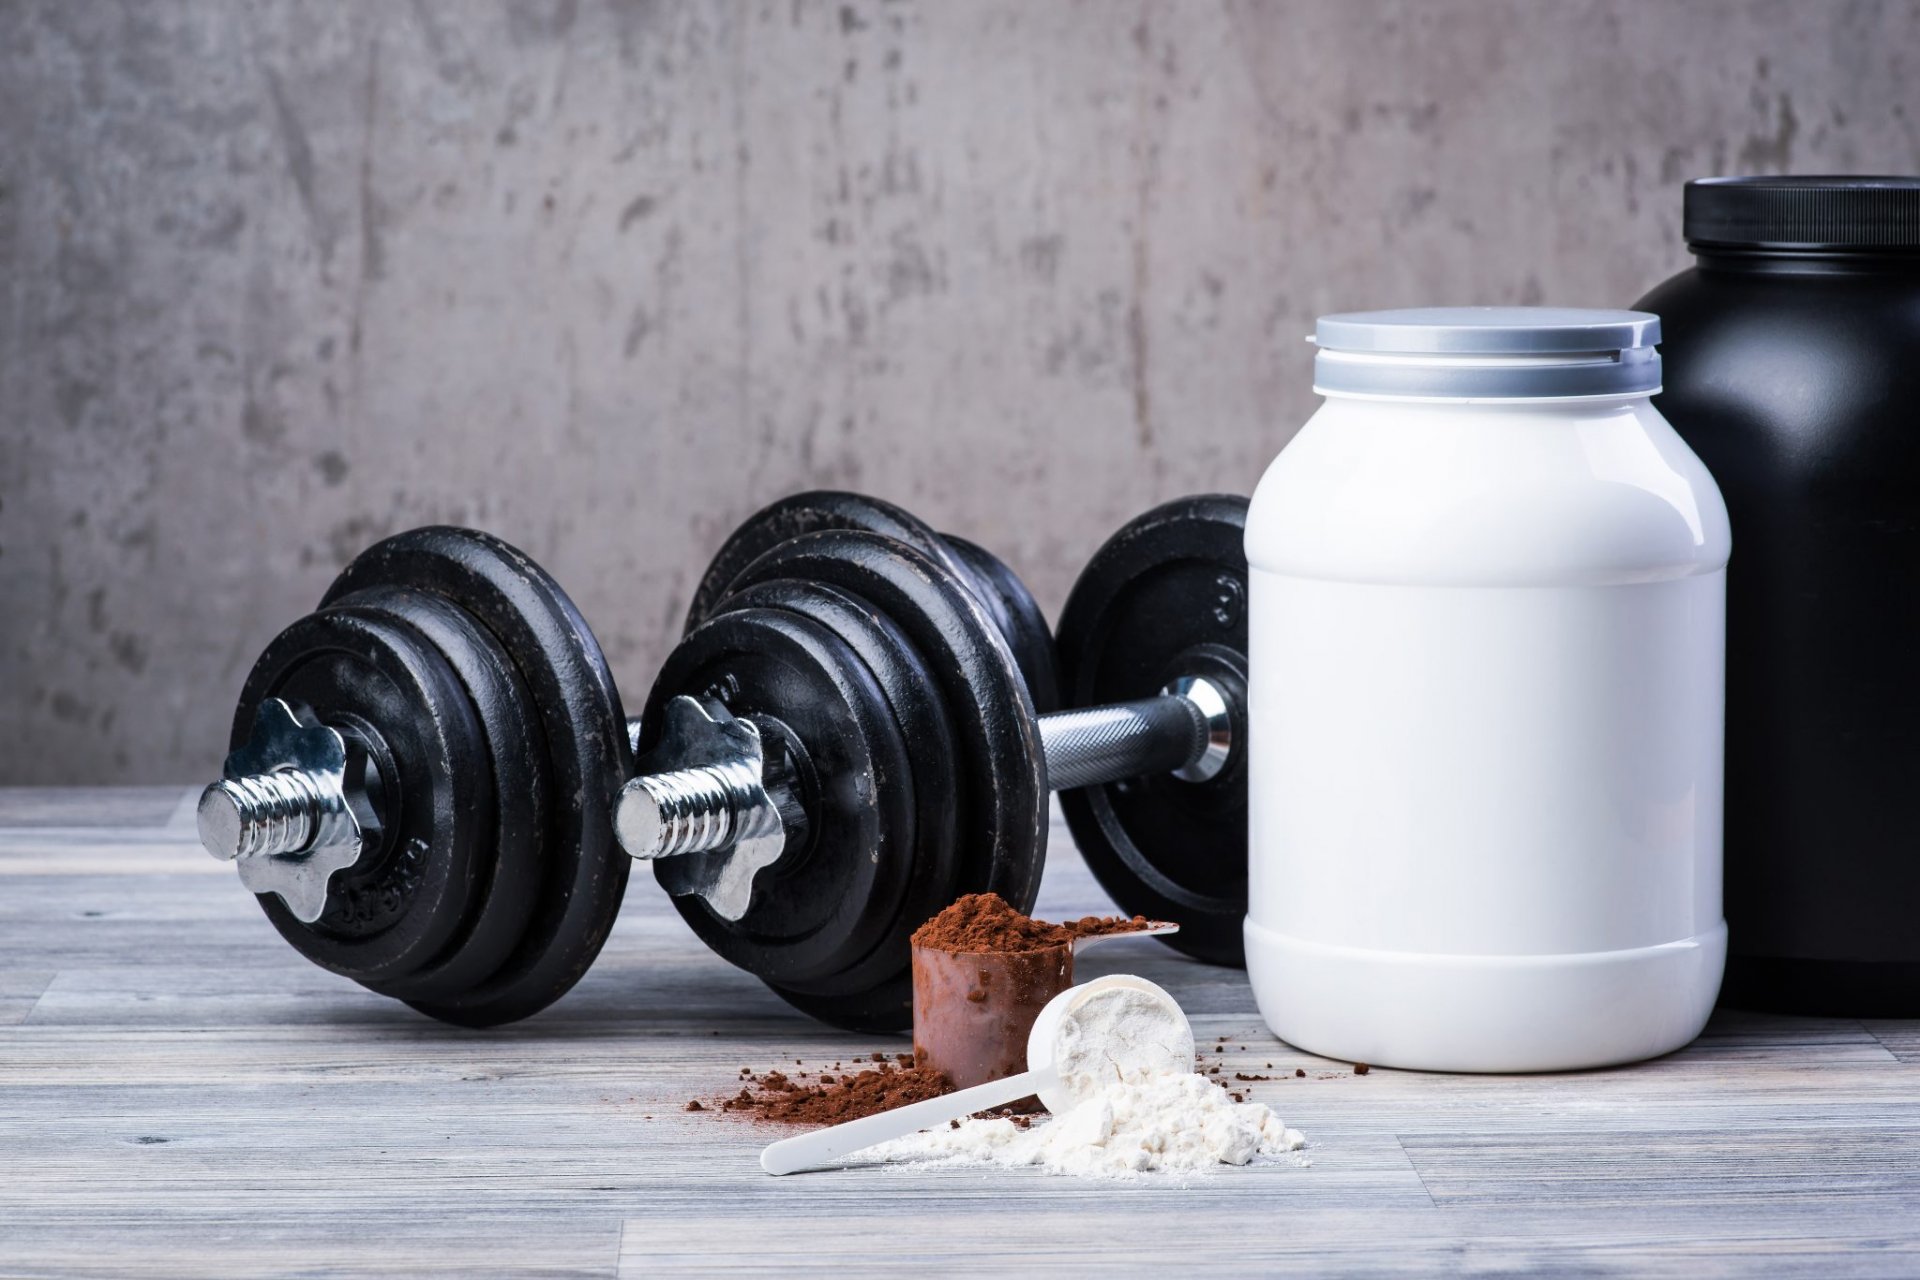 Para que sirve la proteína en el gym